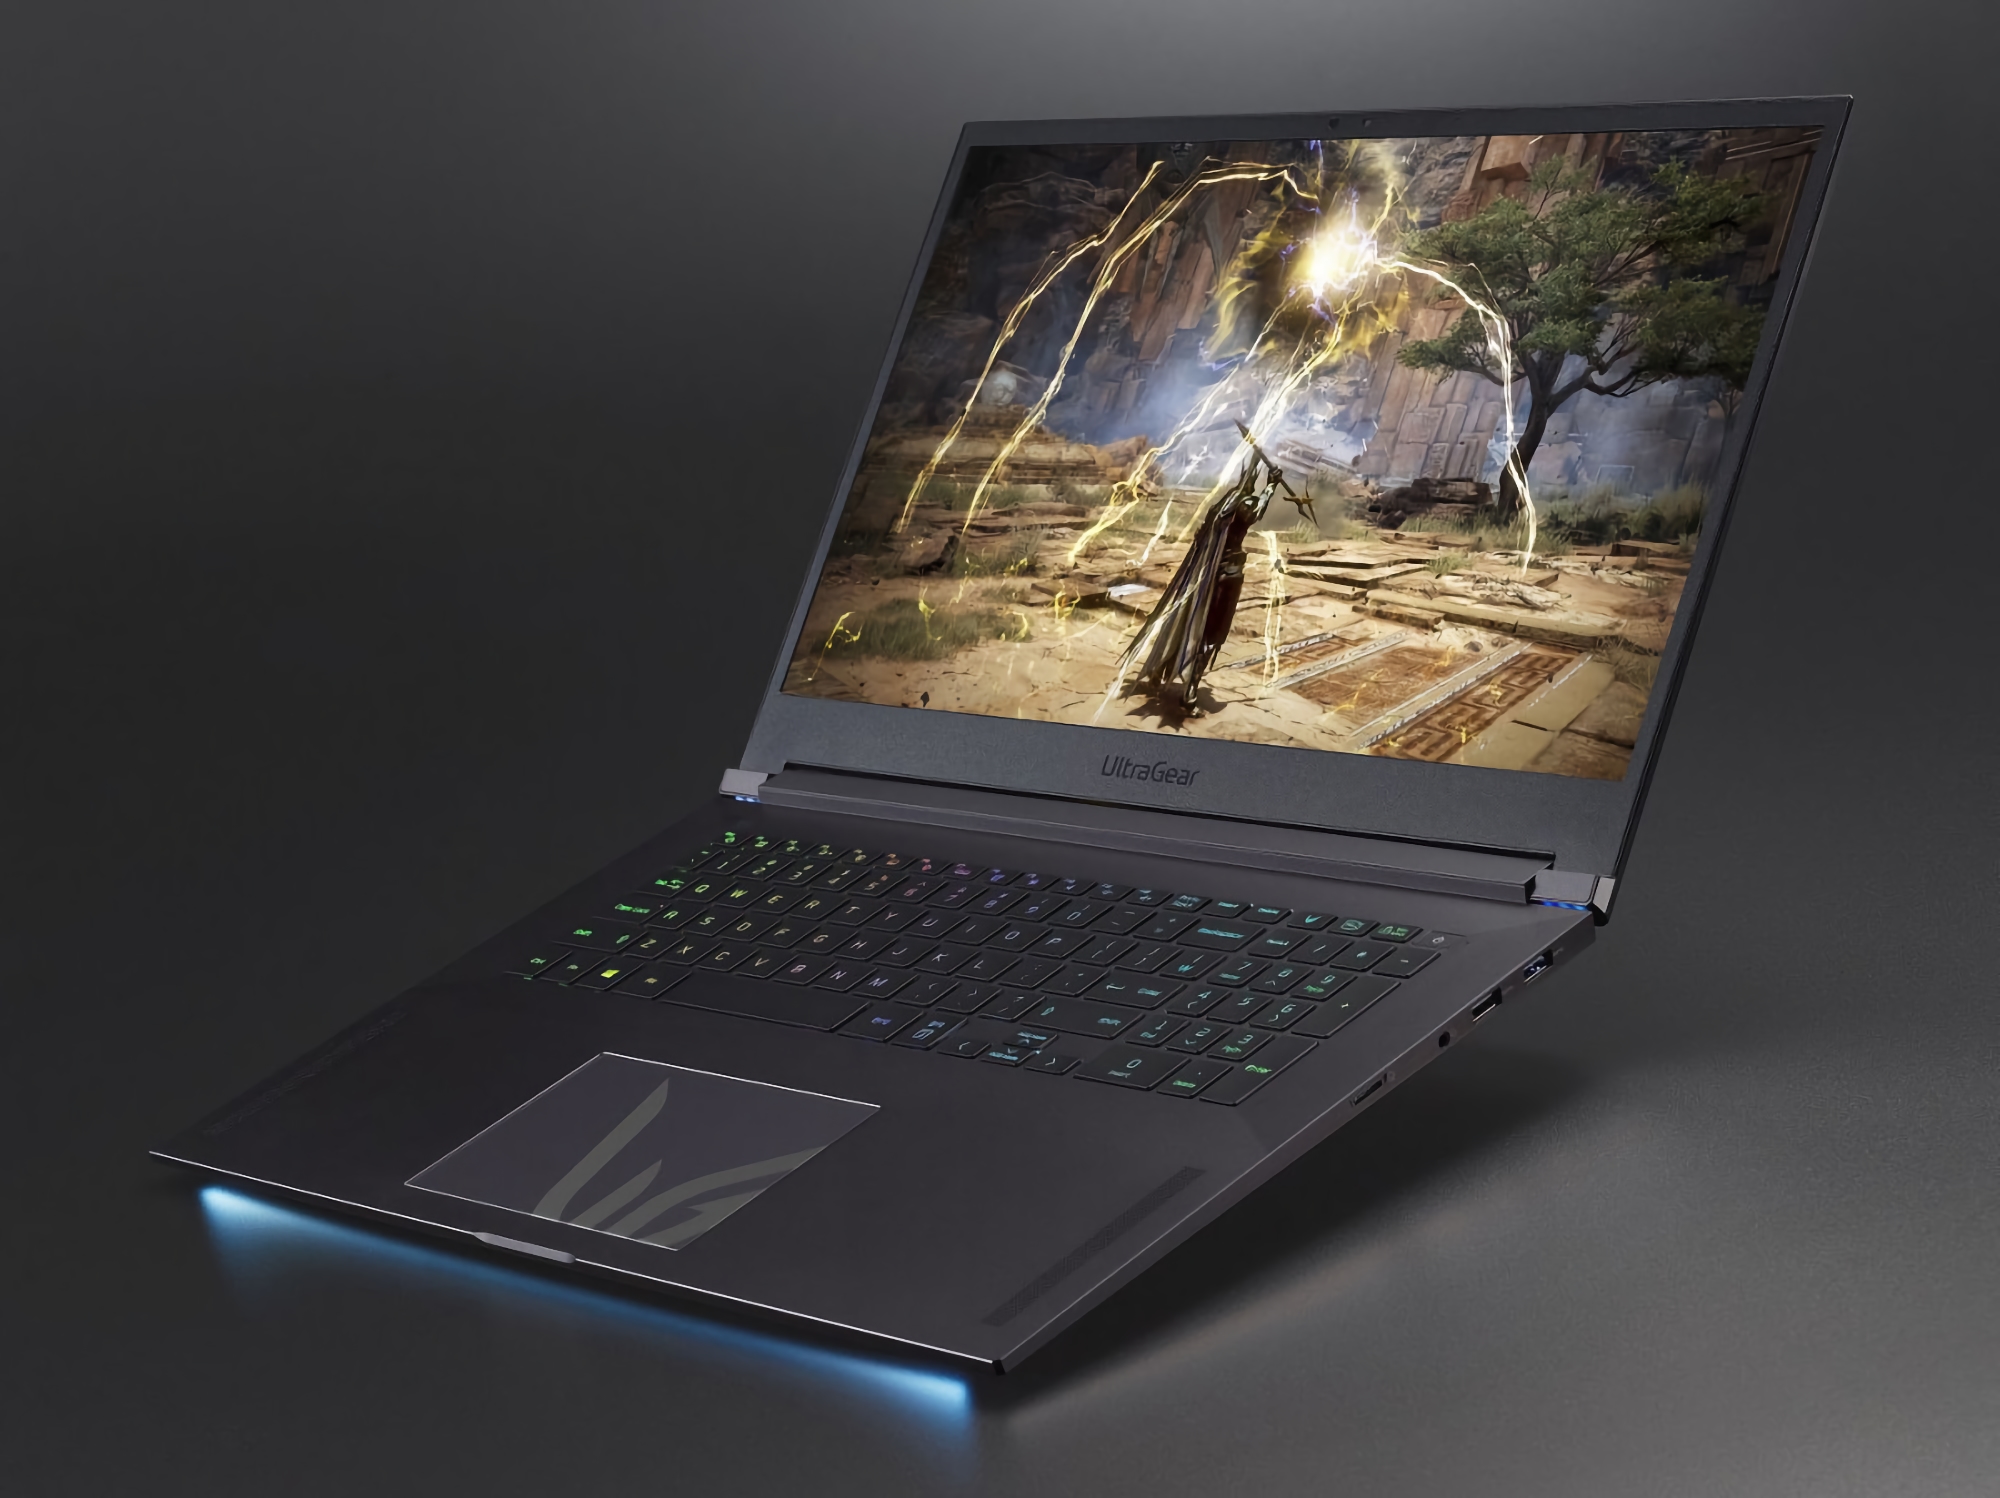 17-calowy ekran 300 Hz, układ Intel Tiger Lake H i karta graficzna GeForce RTX 3080: LG prezentuje swój pierwszy laptop do gier